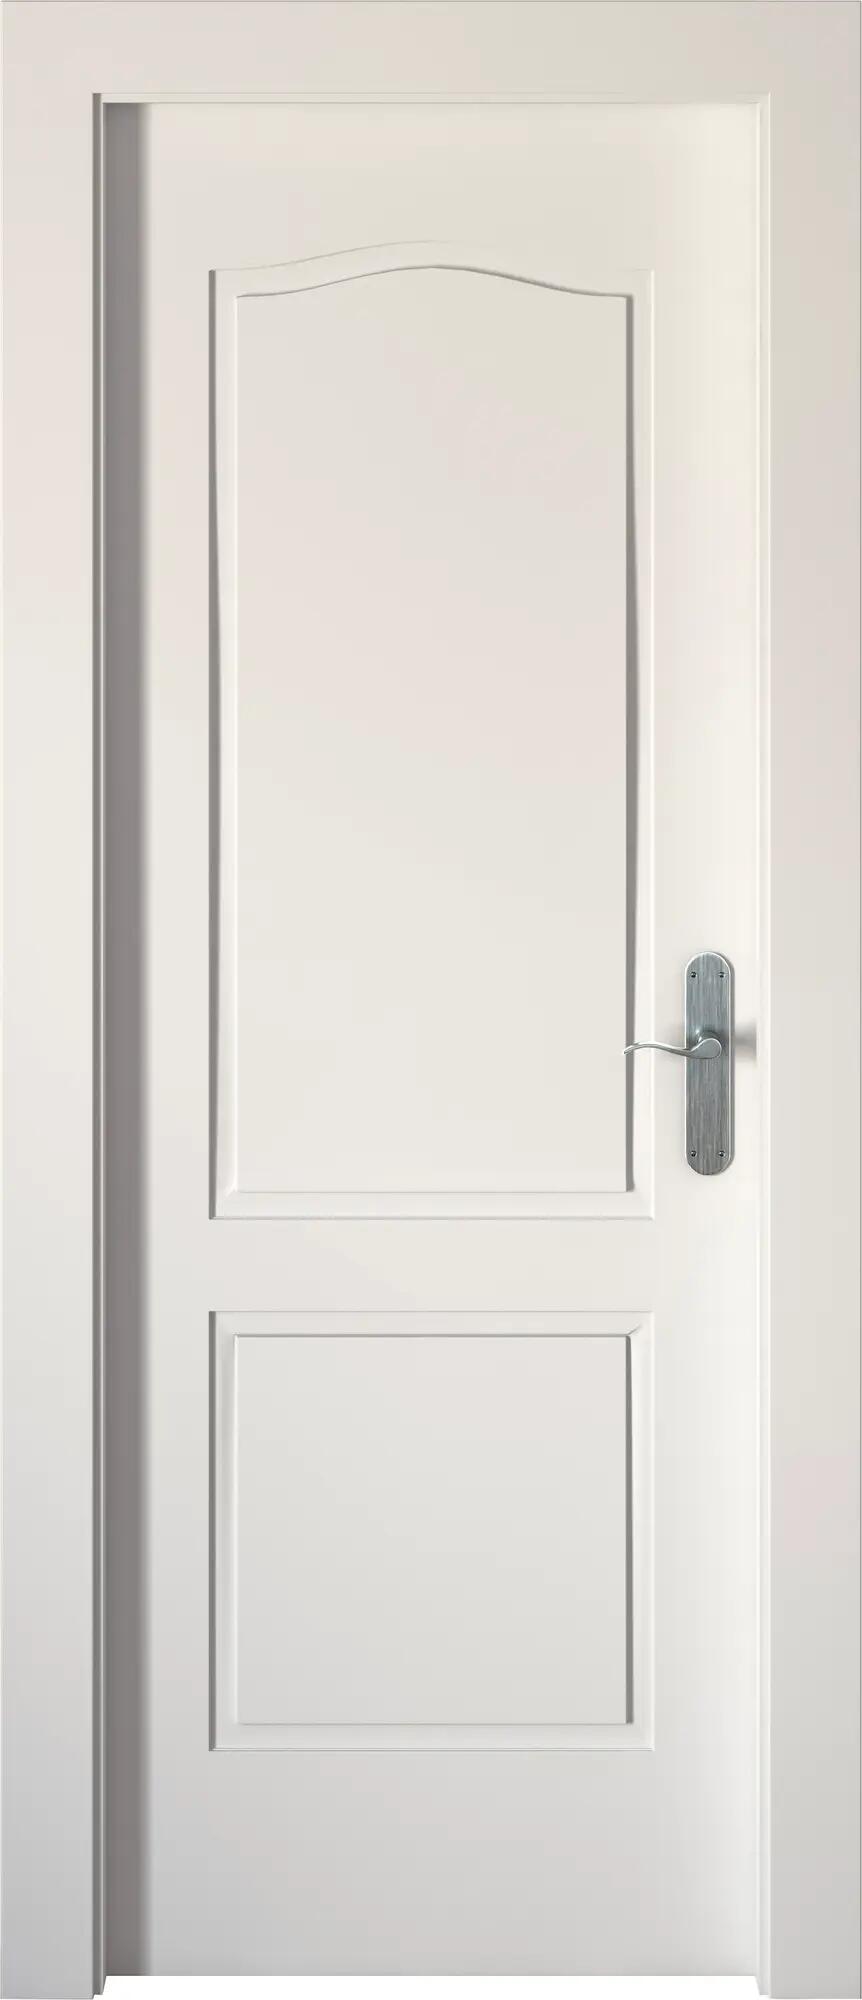 Puerta praga blanco apertura izquierda 82.5cm